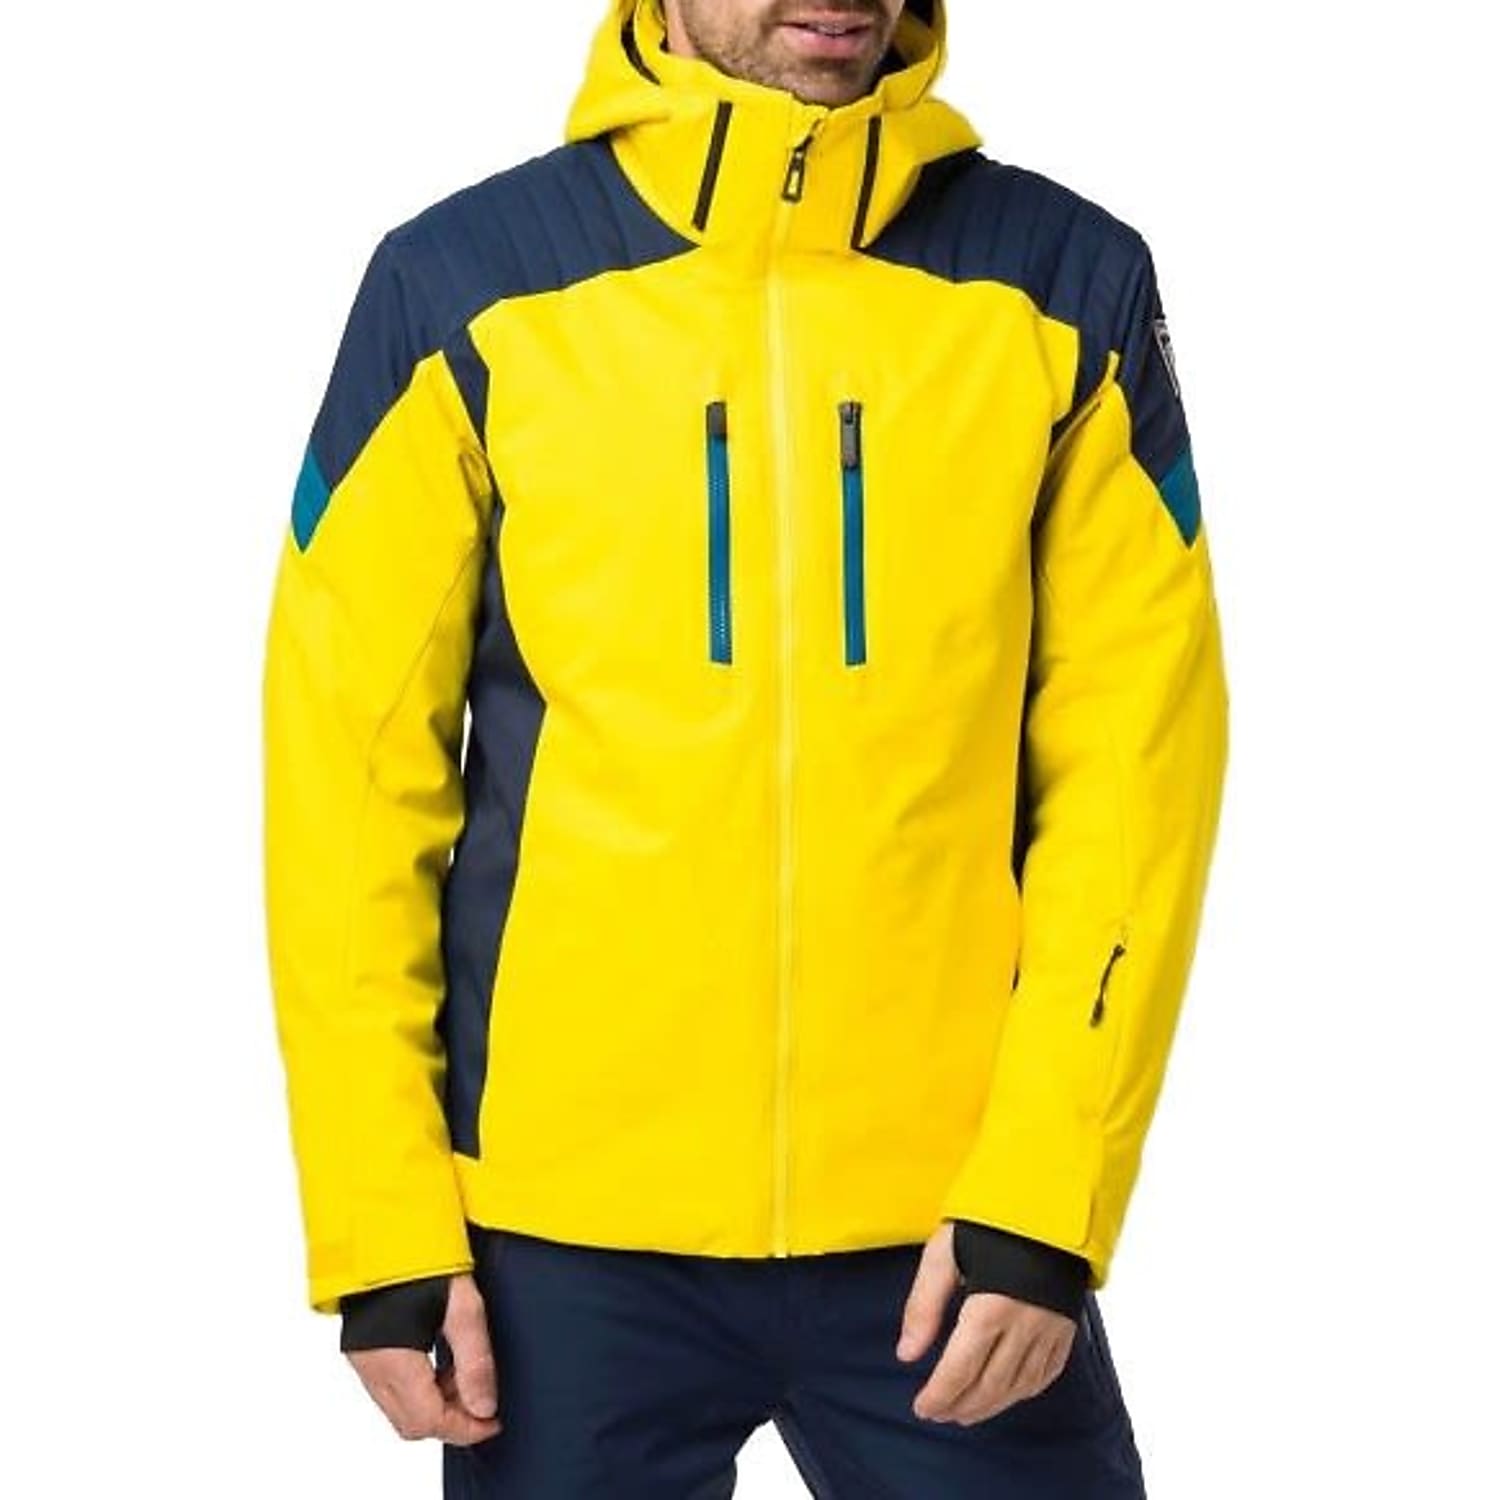 Sale > rossignol ski suit > in stock